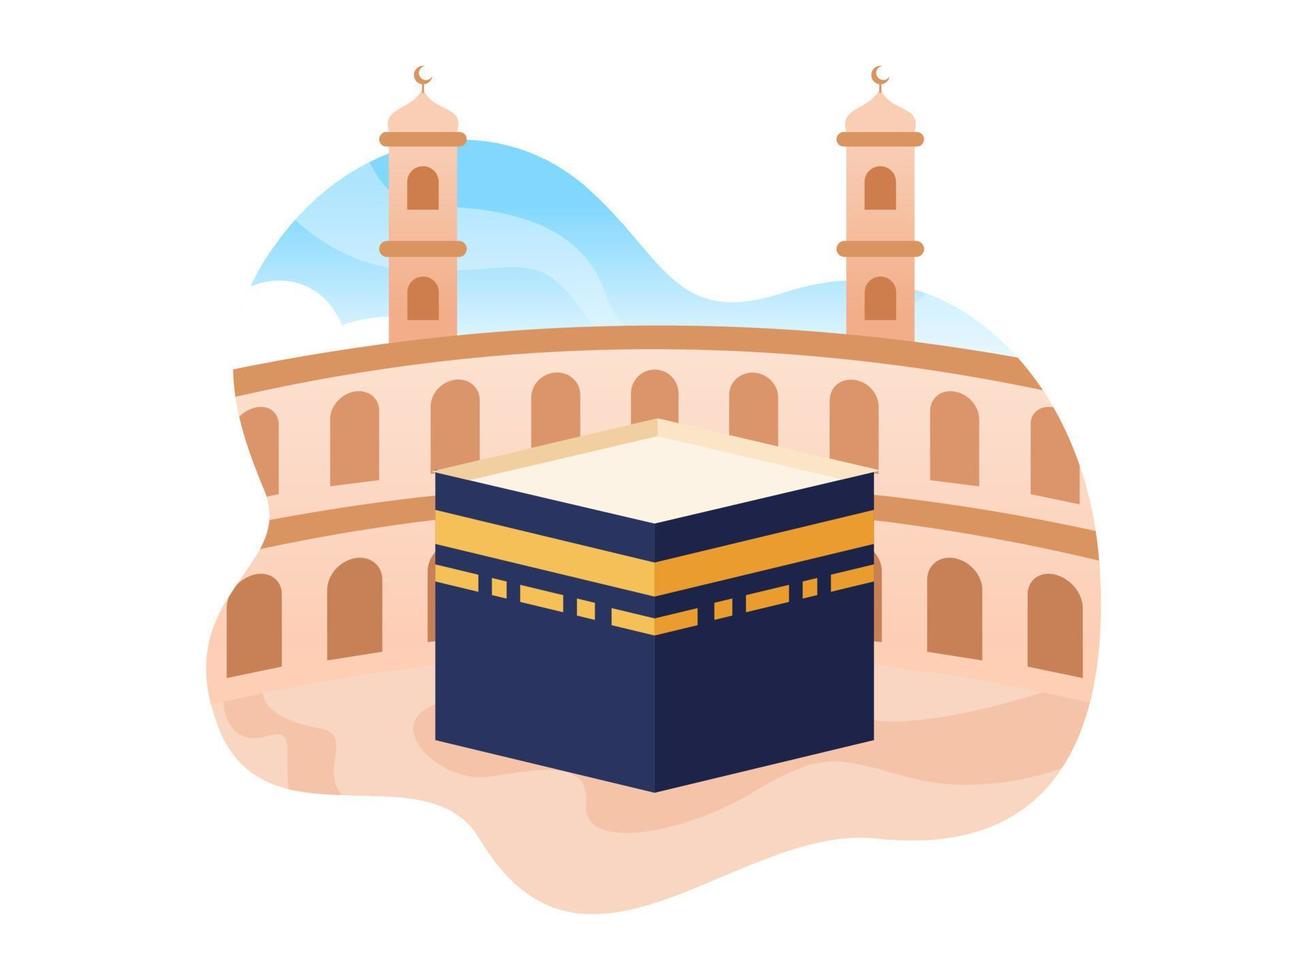 la meca kaaba y la mezquita al-haram en la ilustración de vector de hito de arabia saudita. masjid nabawi en madina arabia saudita. se puede utilizar para tarjetas de felicitación, infografías, pancartas, afiches, web, etc.